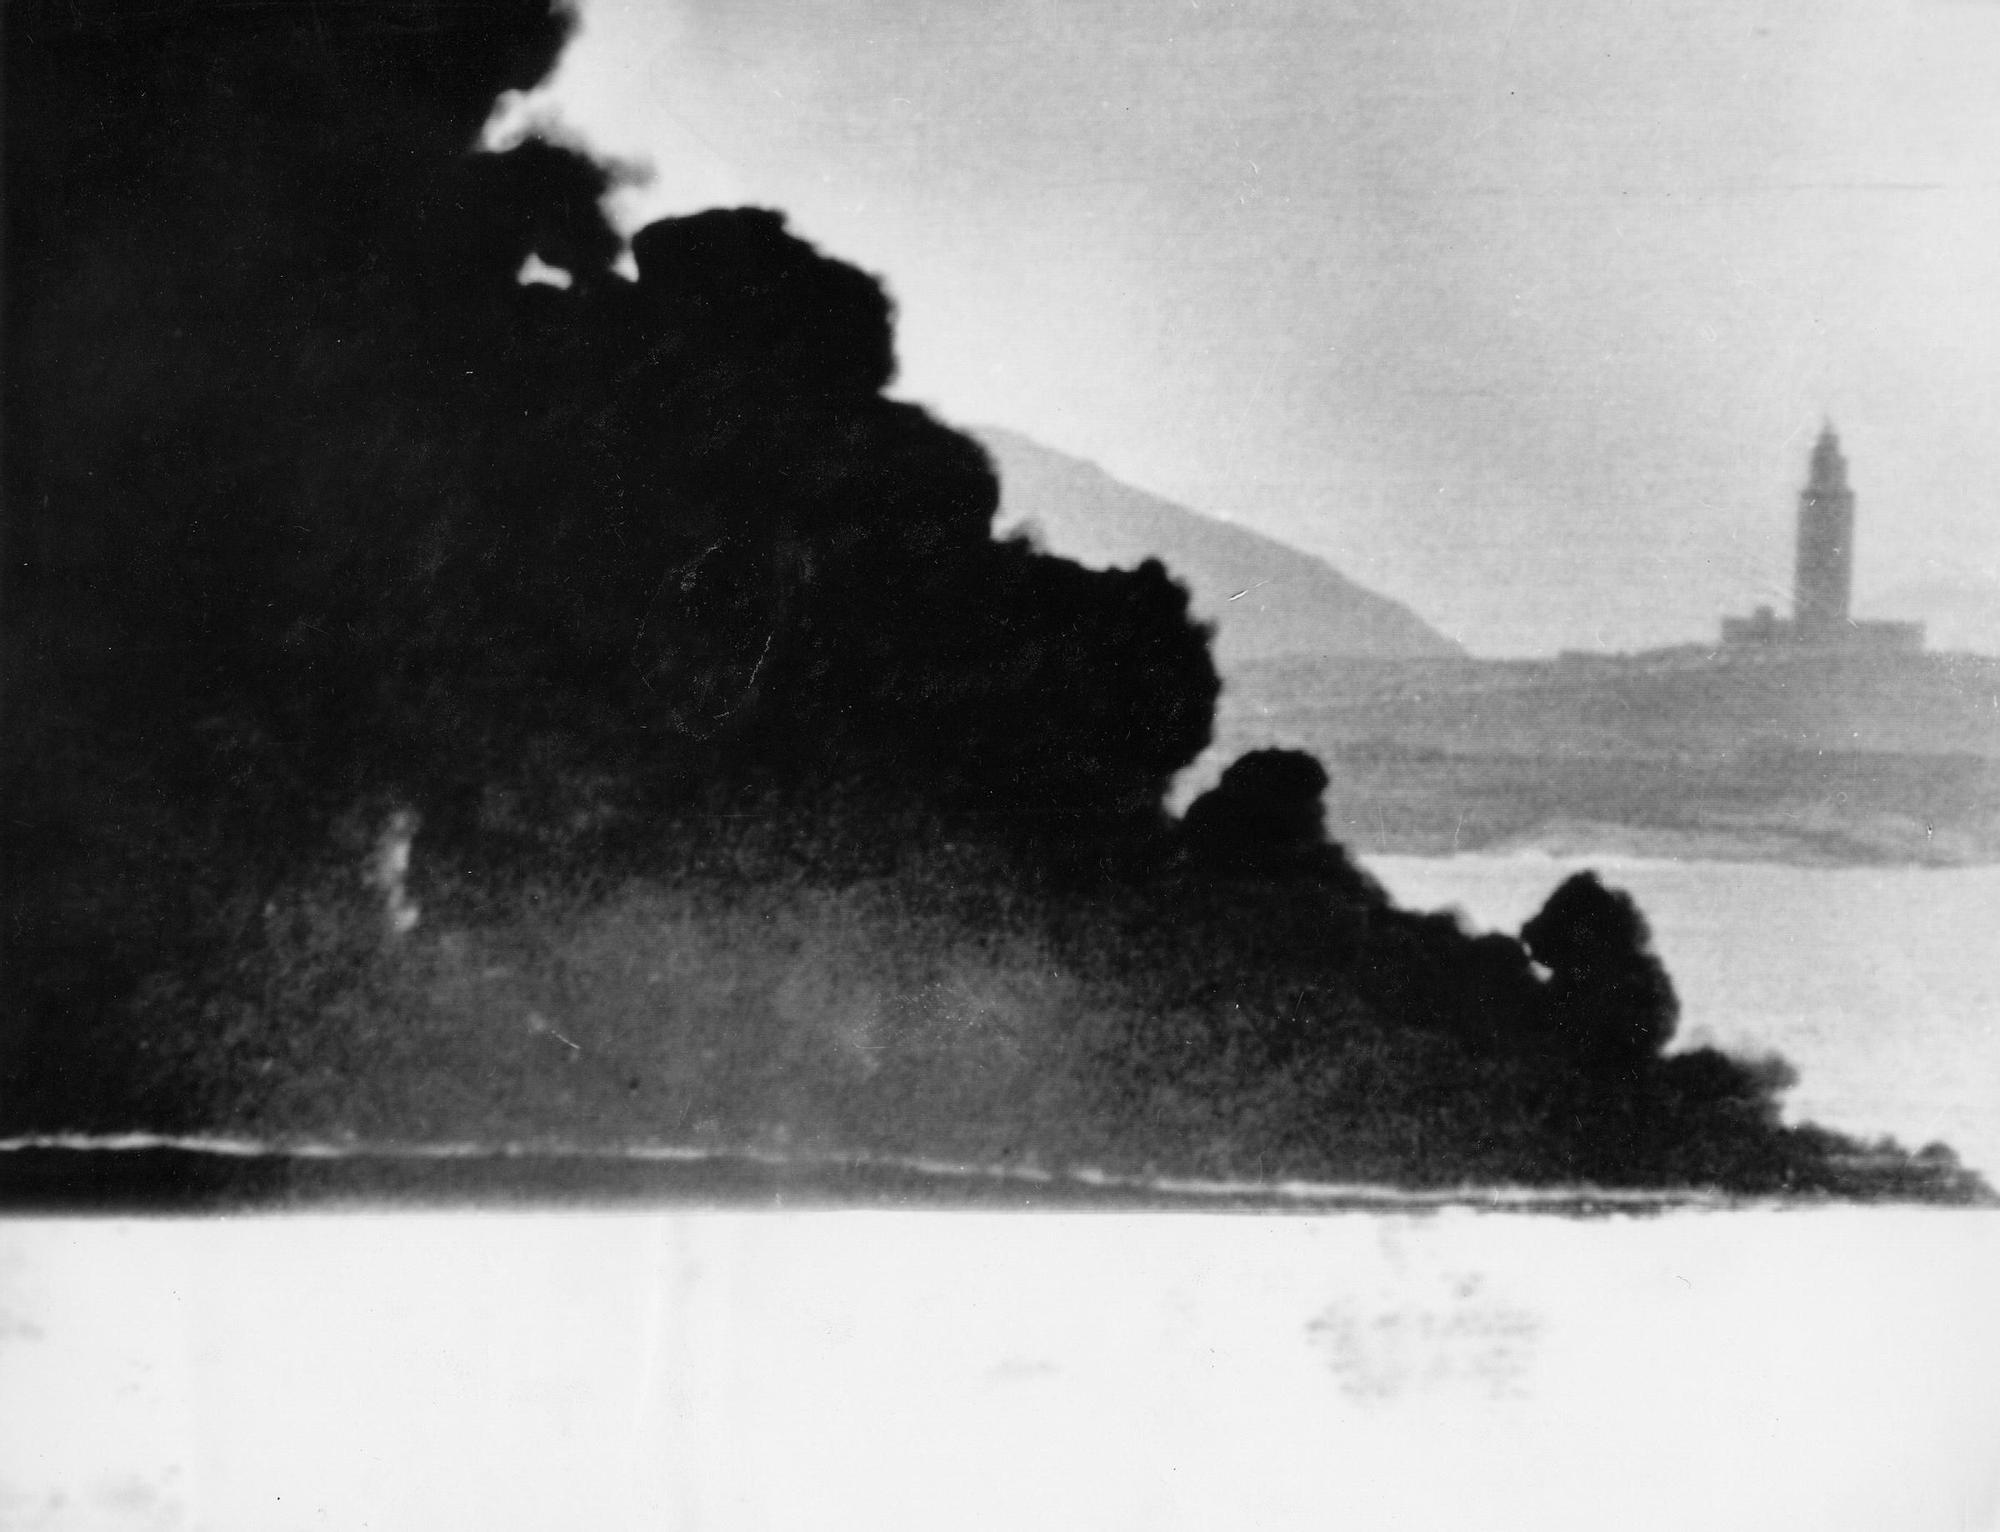 Intensa humareda del buque petrolero Urquiola encallado e incendiado en la entrada de la ría de A Coruña en 1976 LOC (2).jpg